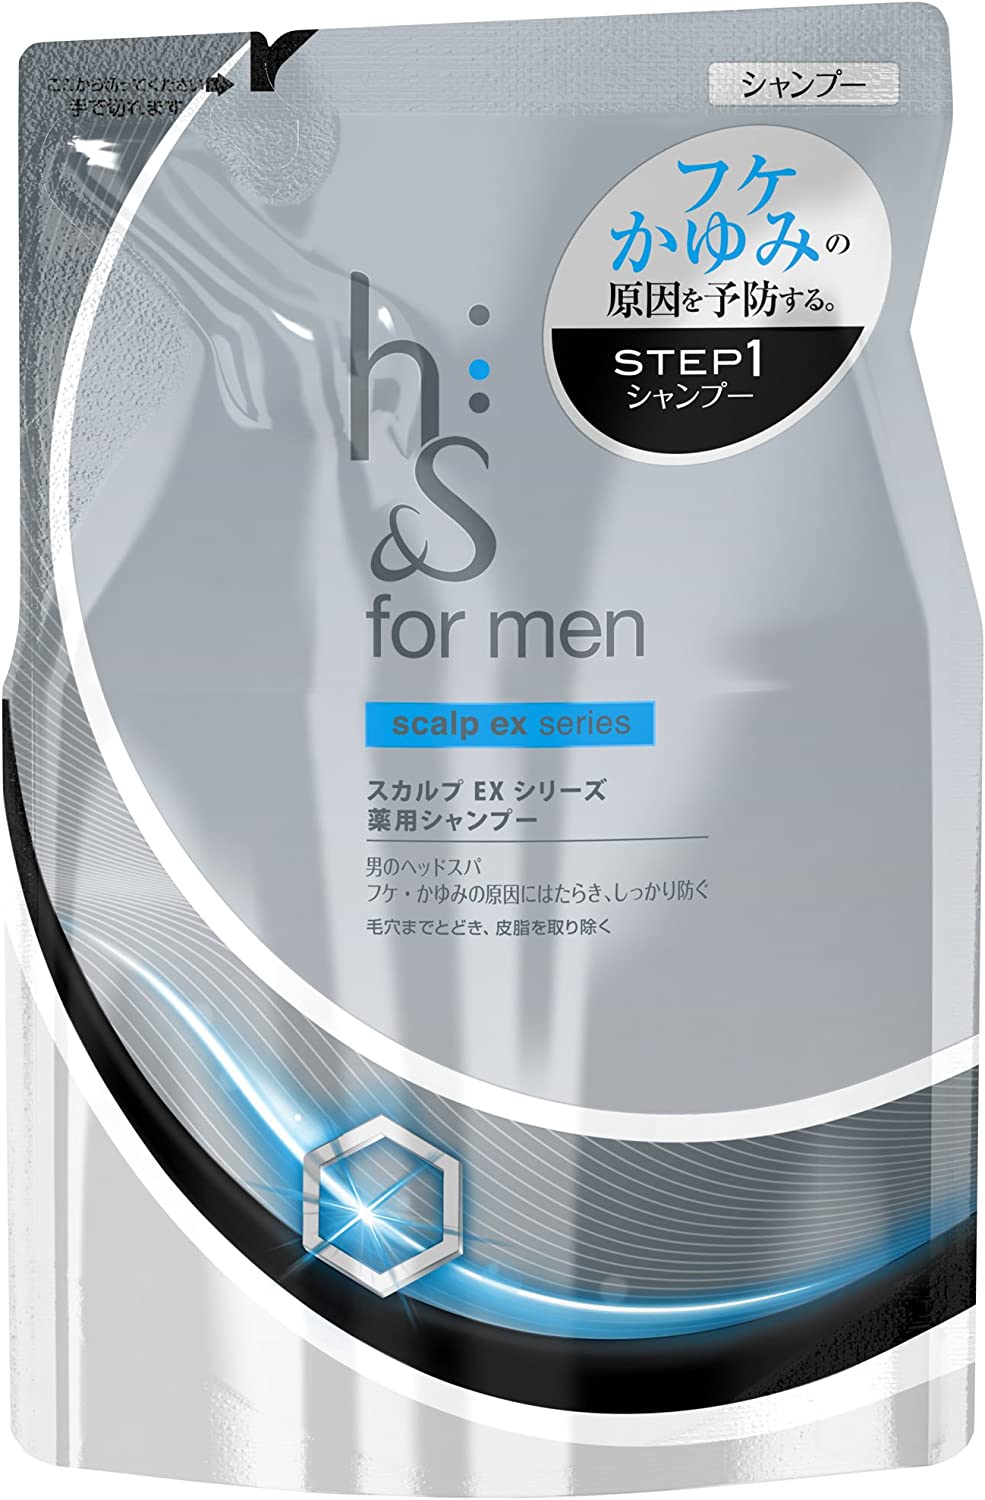 Lodge Napier nedbrydes P&G H&S For Men Scalp Ex Shampoo Refill (340Ml) - Walmart.com